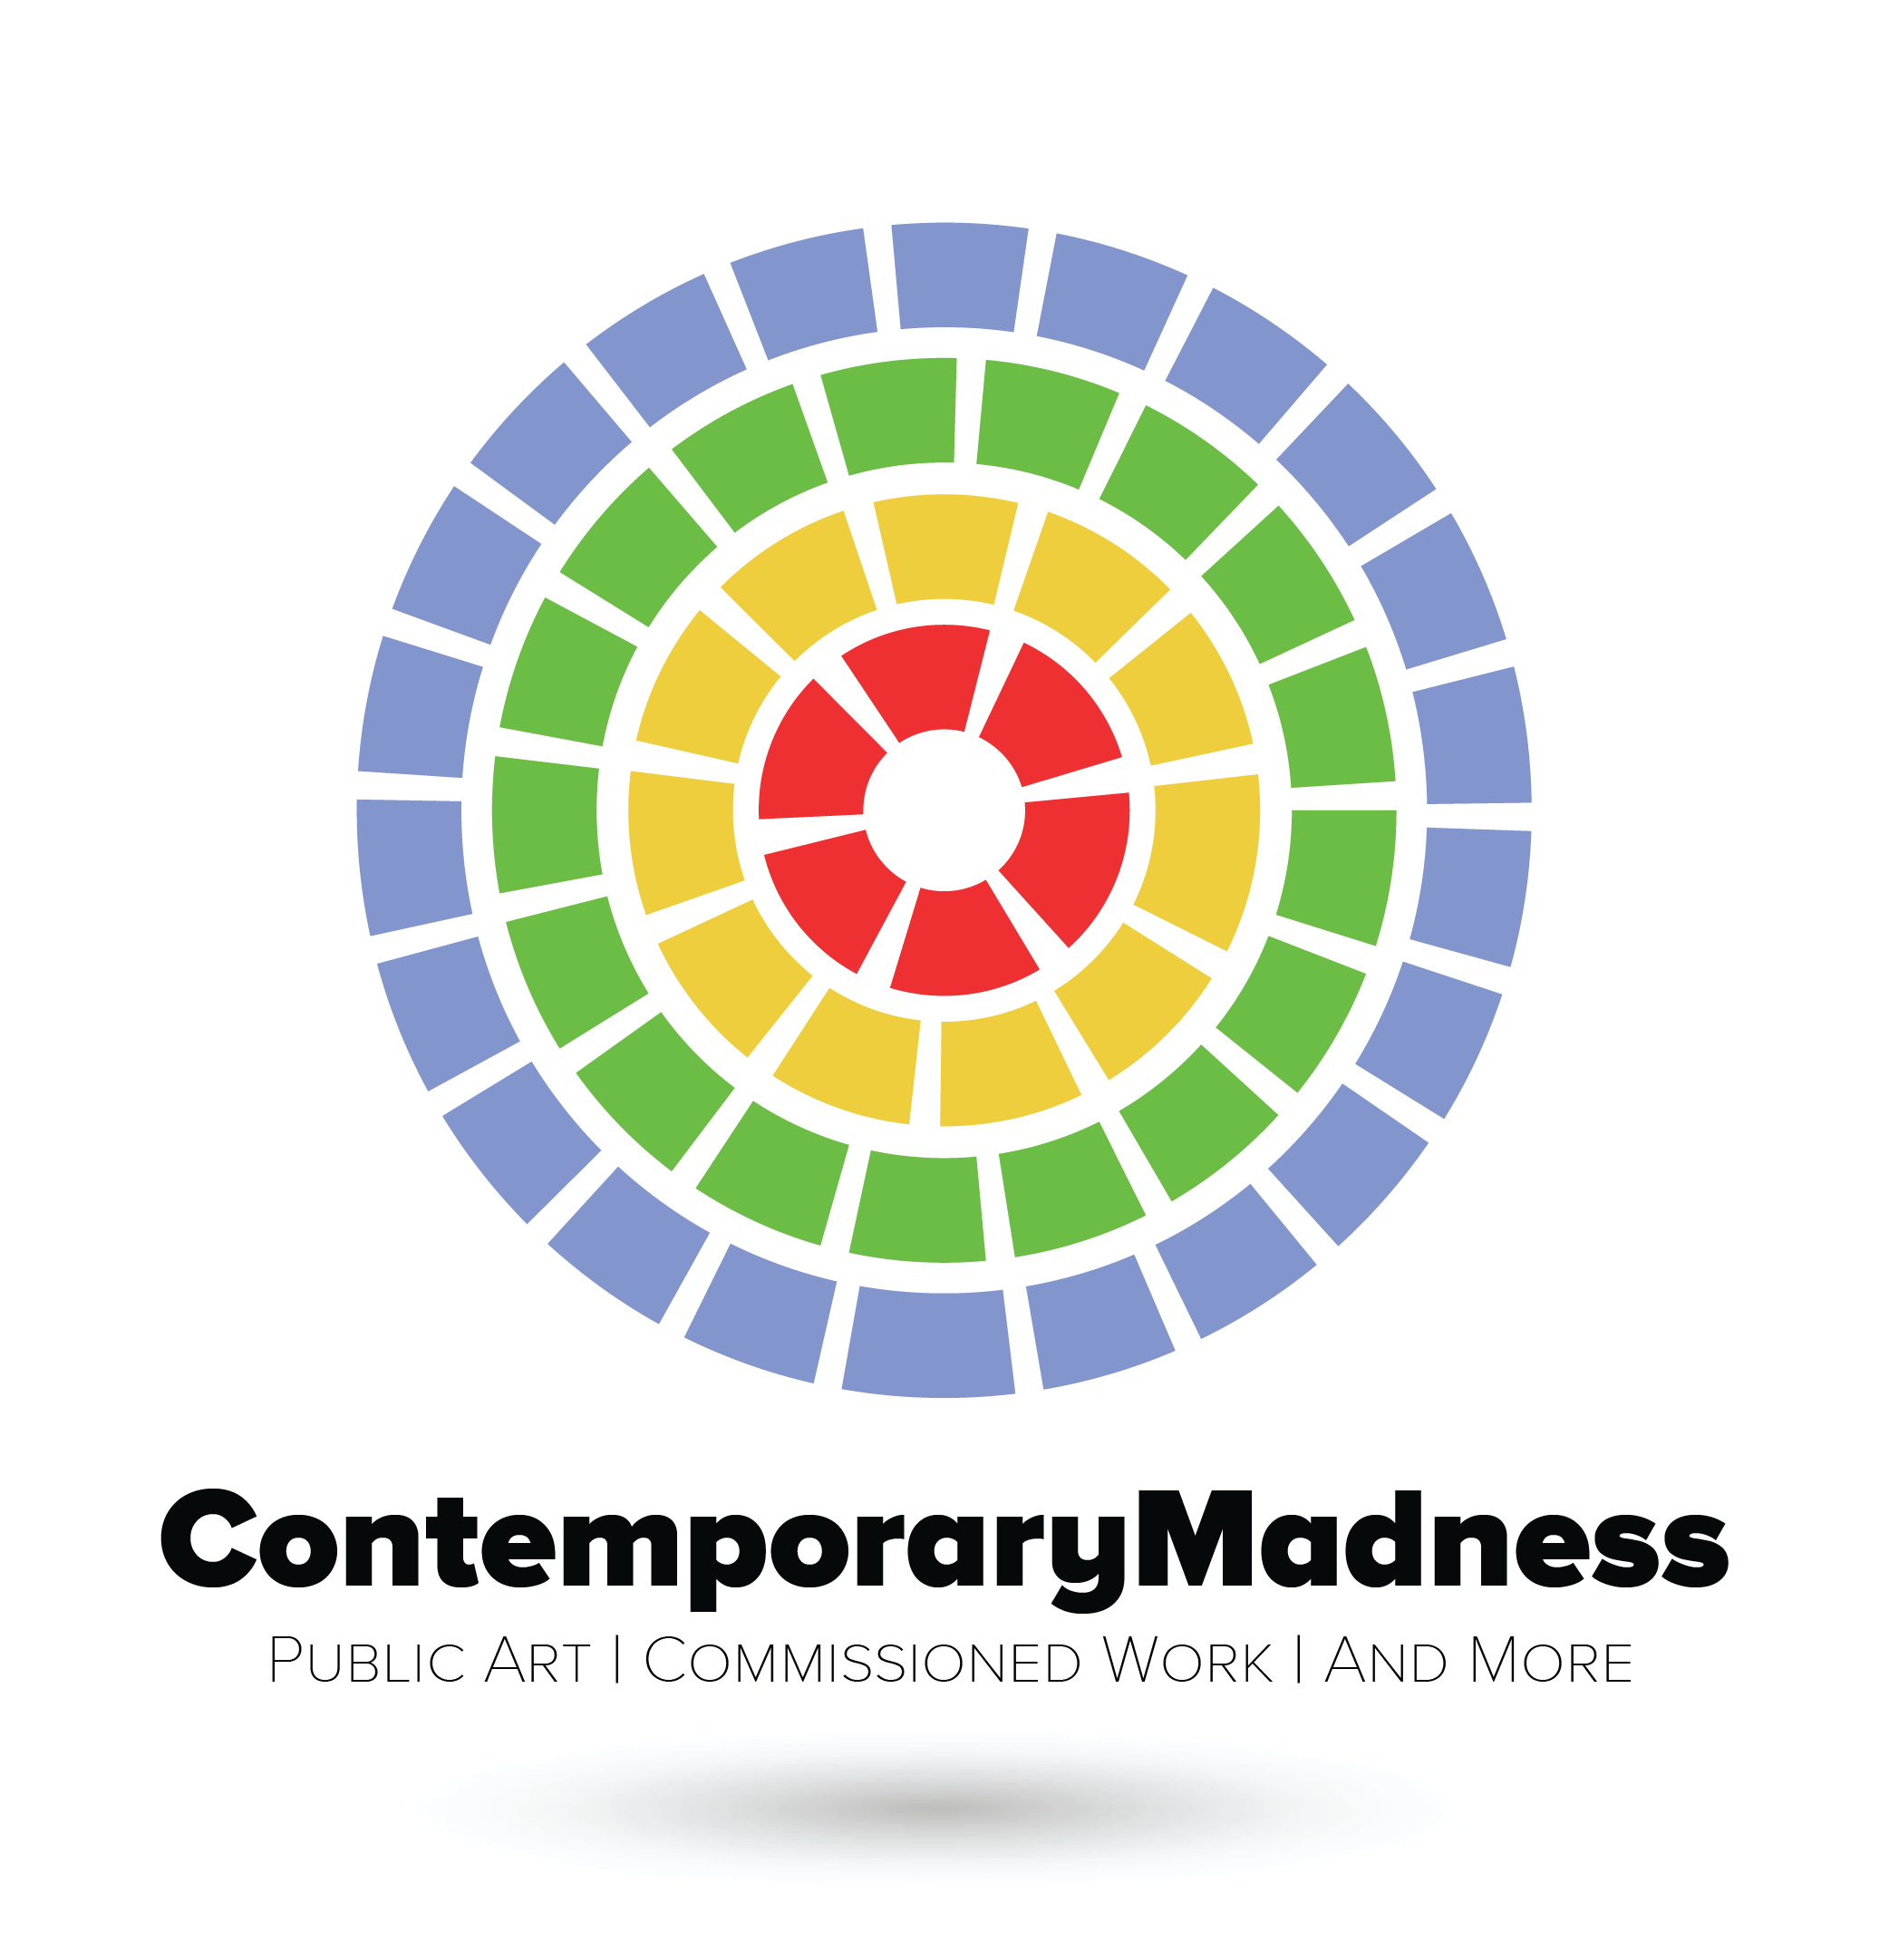 ContemporaryMadnessLogo-01.png